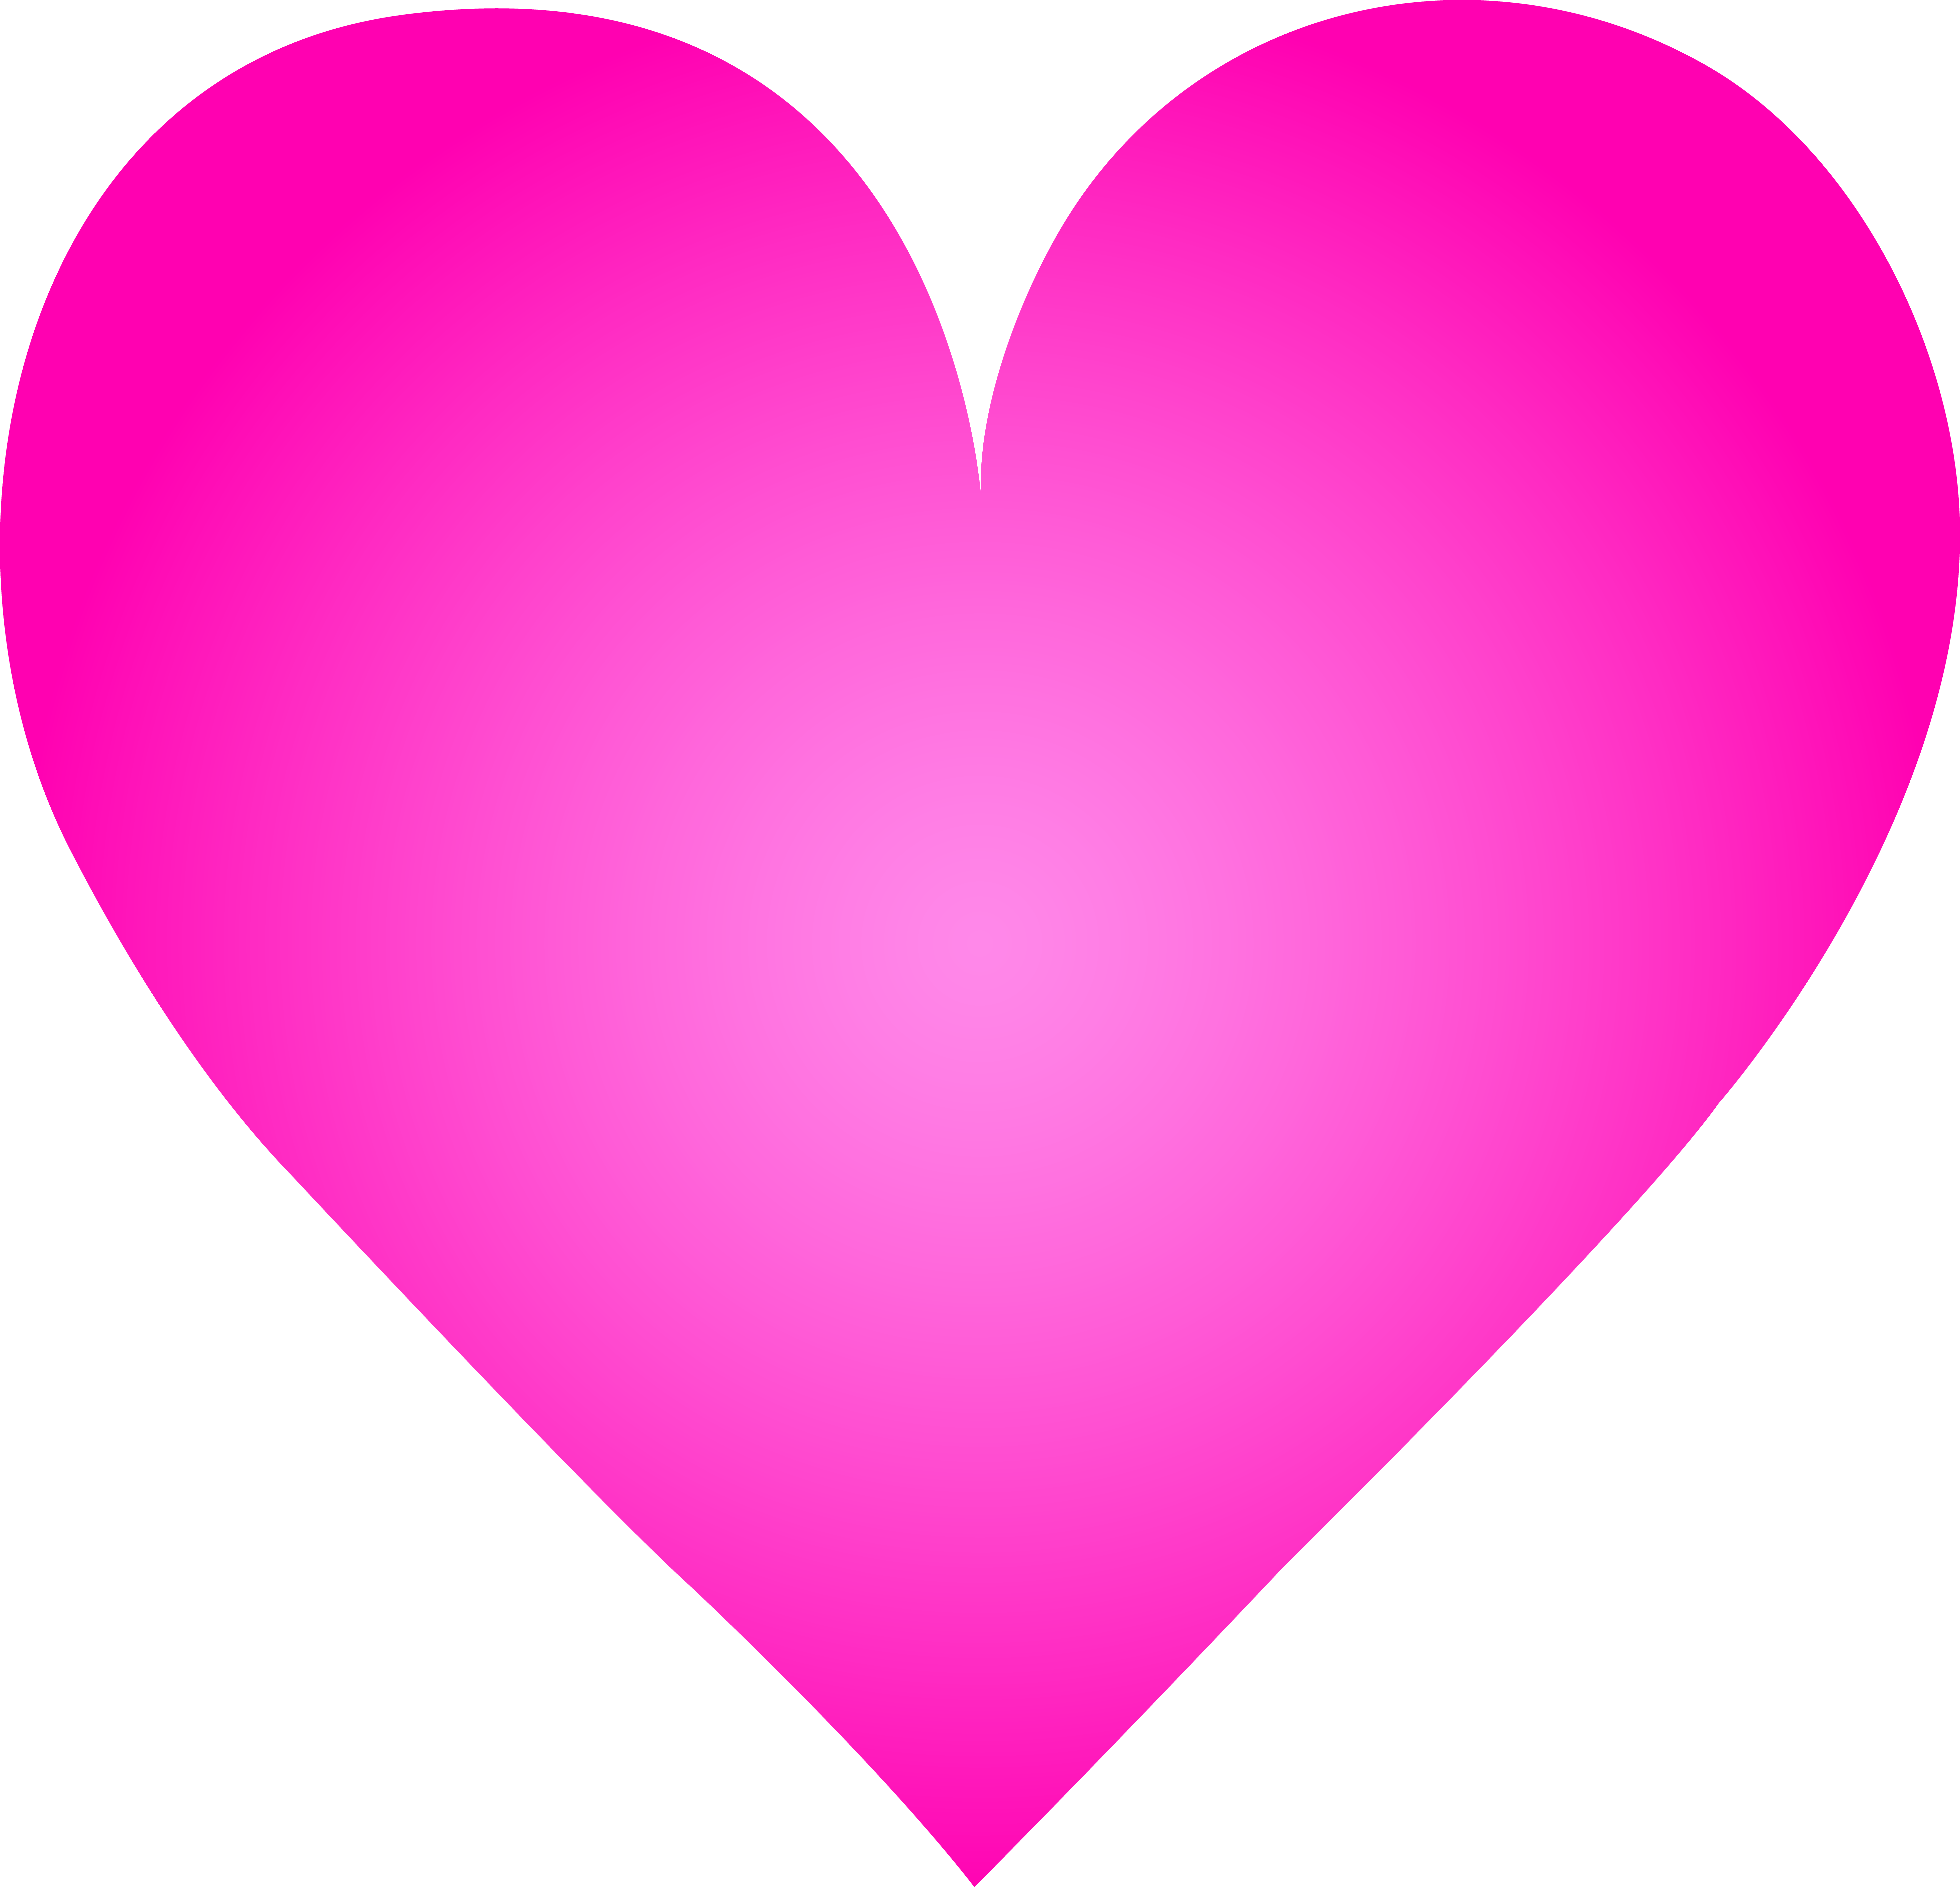 Big Pink Heart Clip Art